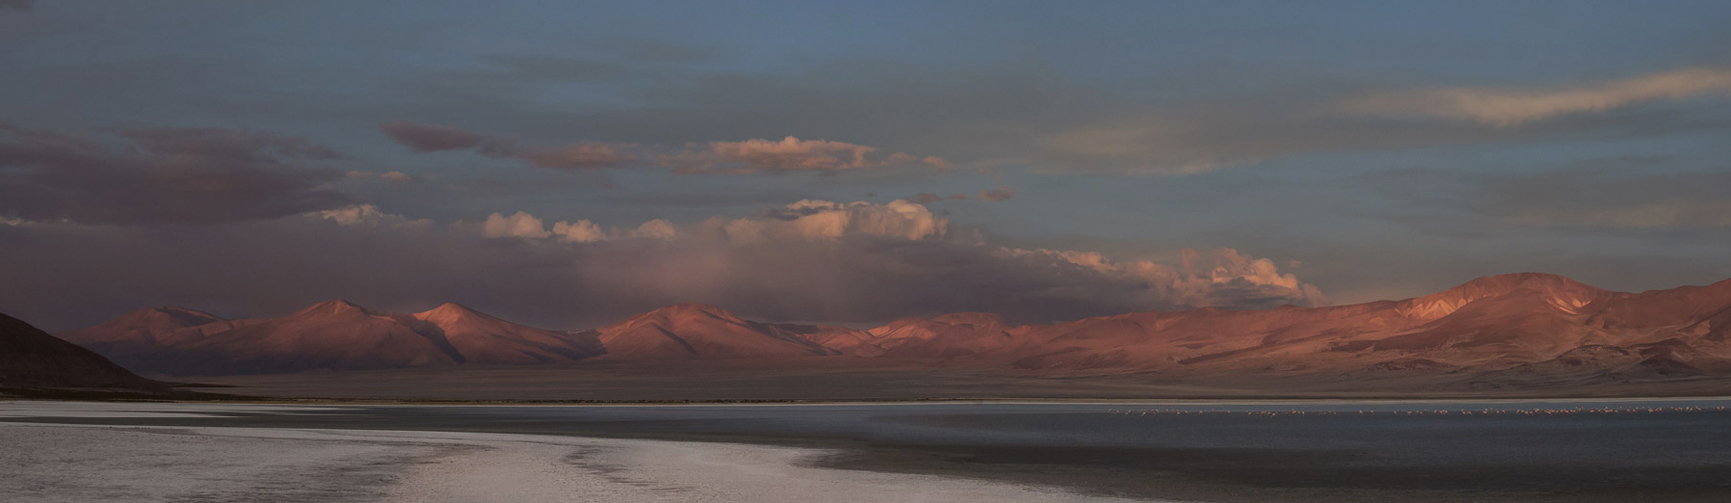 Übernachtung an unserem erster Salzsee Salar de Huasco